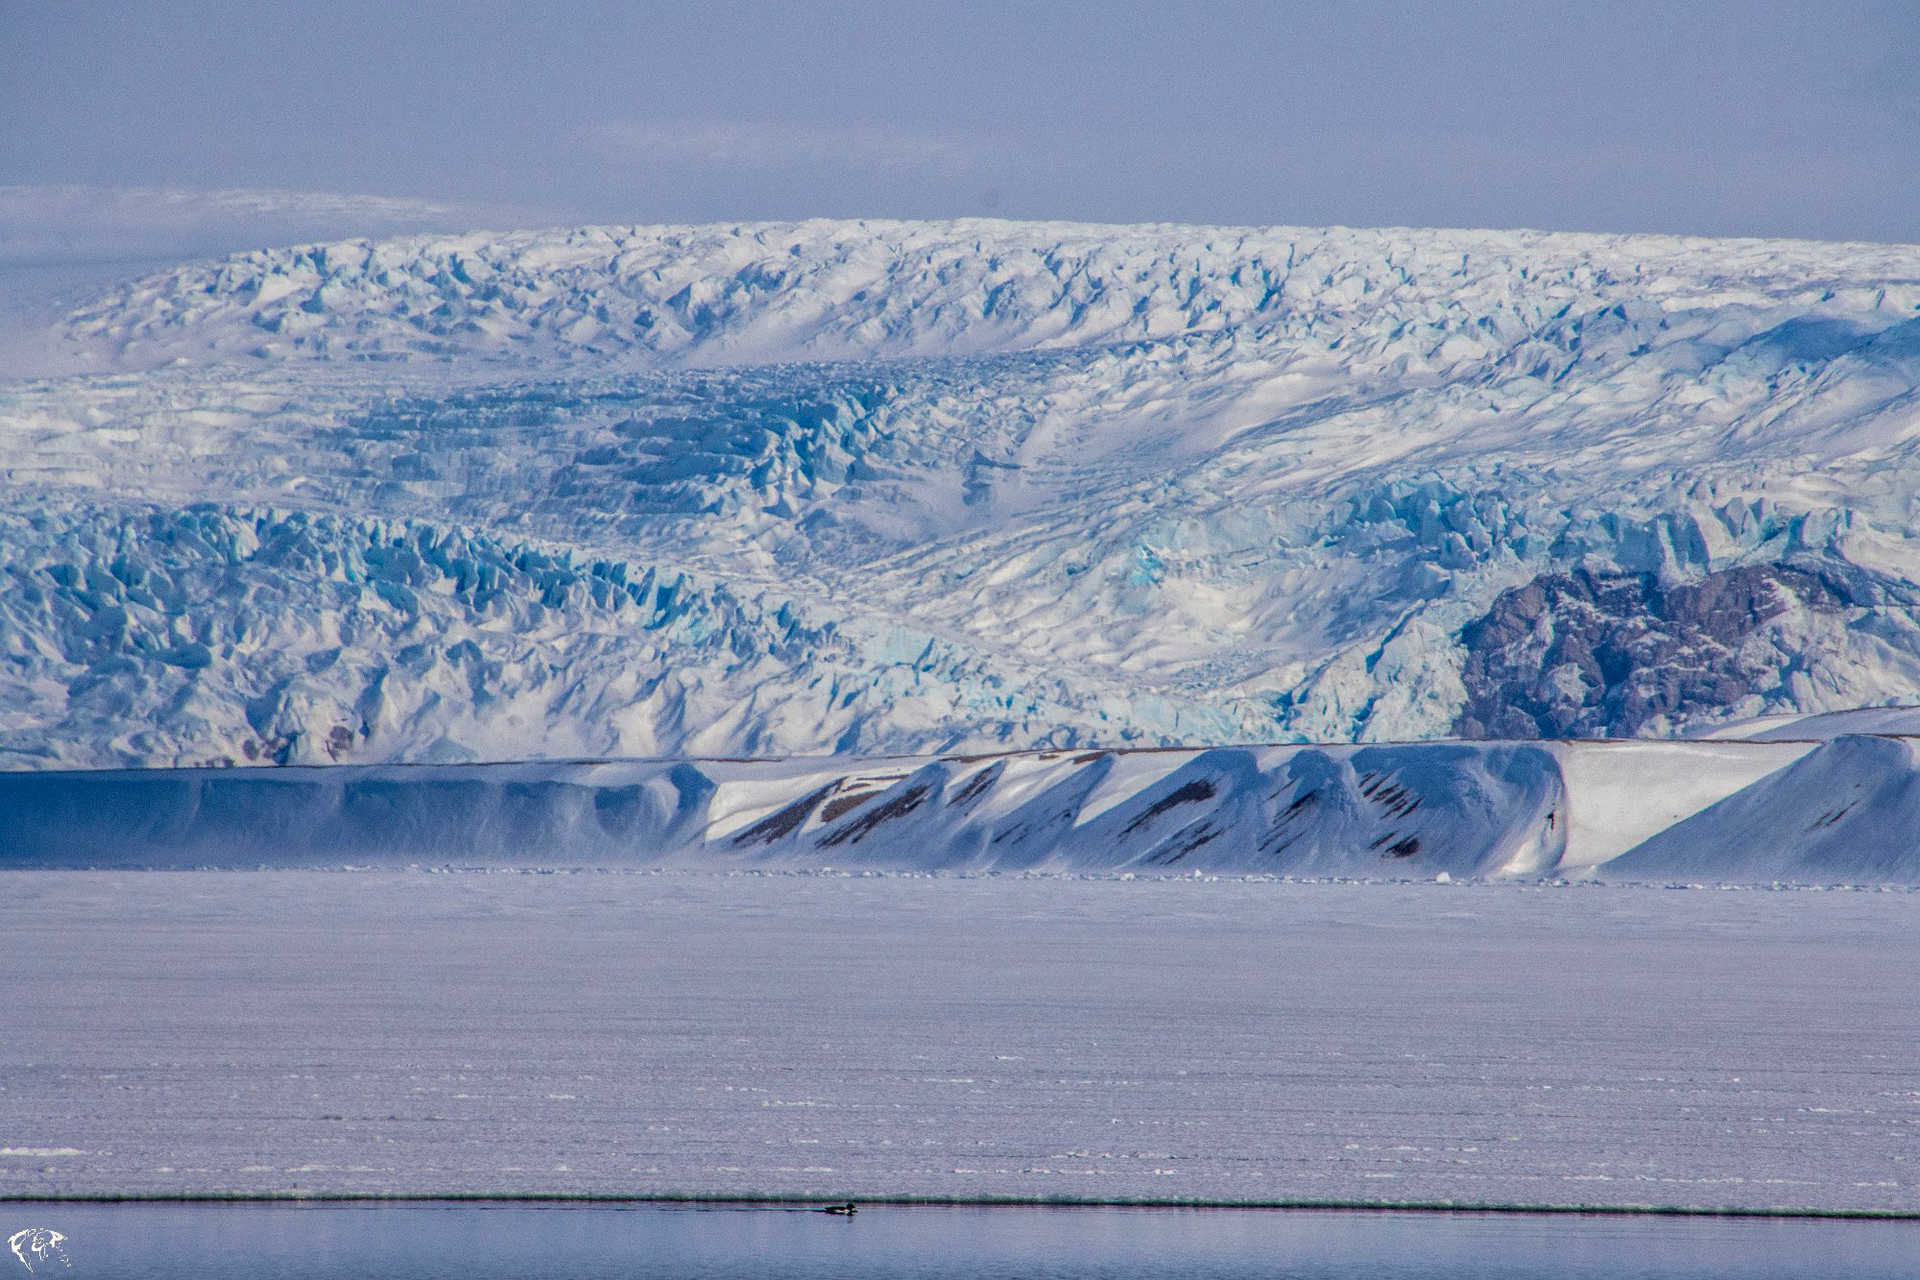 Glacier du Svalbard en hiver